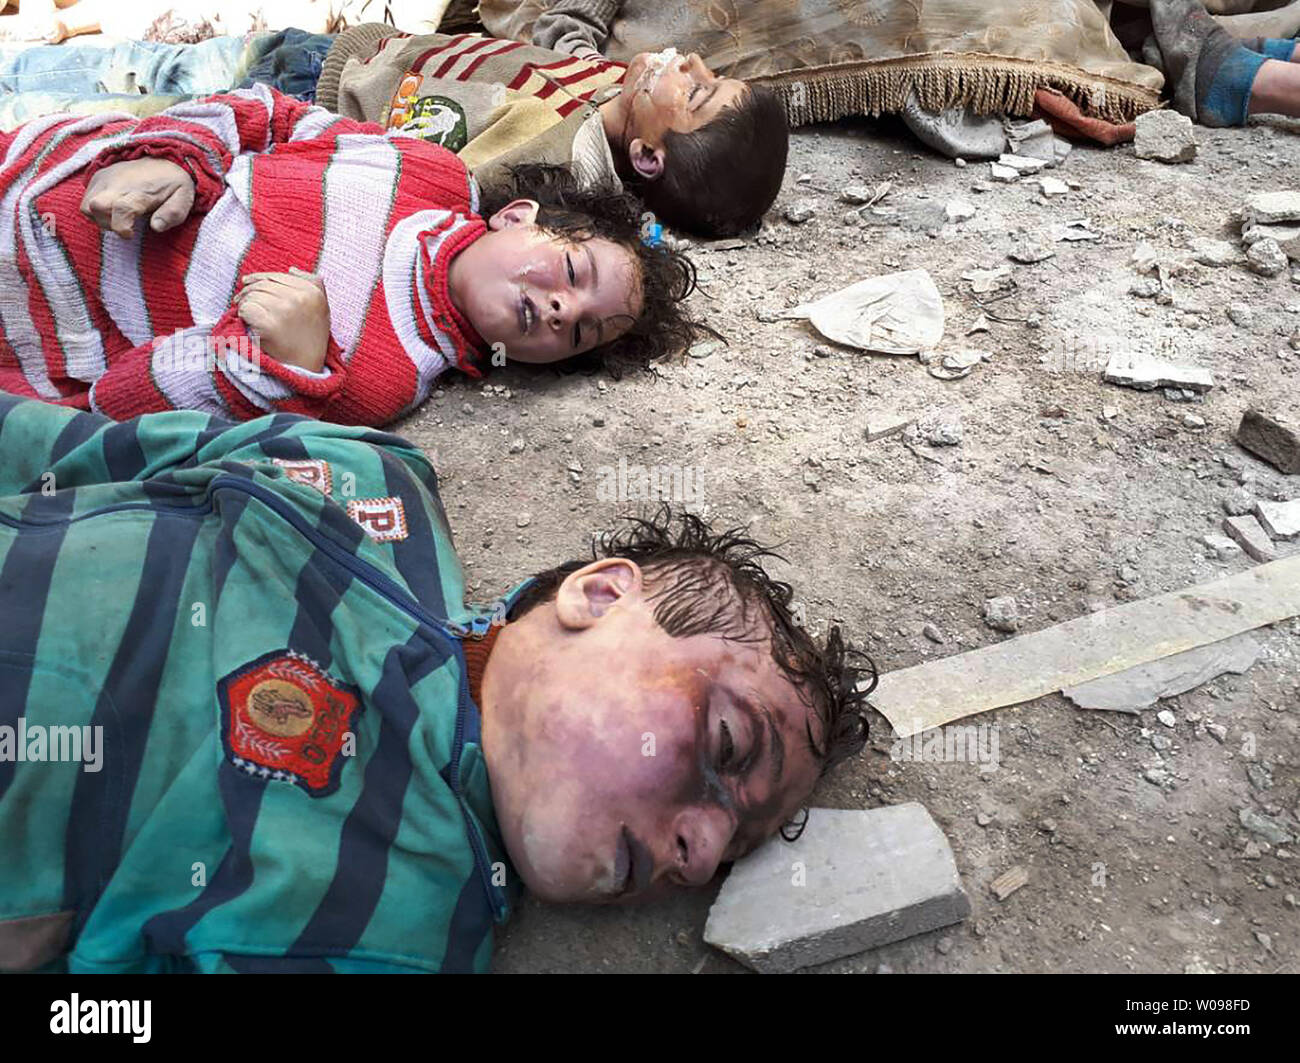 *** Herausgeberanmerkung INHALT *** Leichen von Kindern nach einer angeblichen chemischer Angriff auf die Rebellen gehaltene Stadt Douma in Syrien gesehen werden. Mindestens 78 Zivilisten, darunter Frauen und Kinder, starben nach ersten Ergebnissen. Foto von Mohammed Hassan/UPI Stockfoto